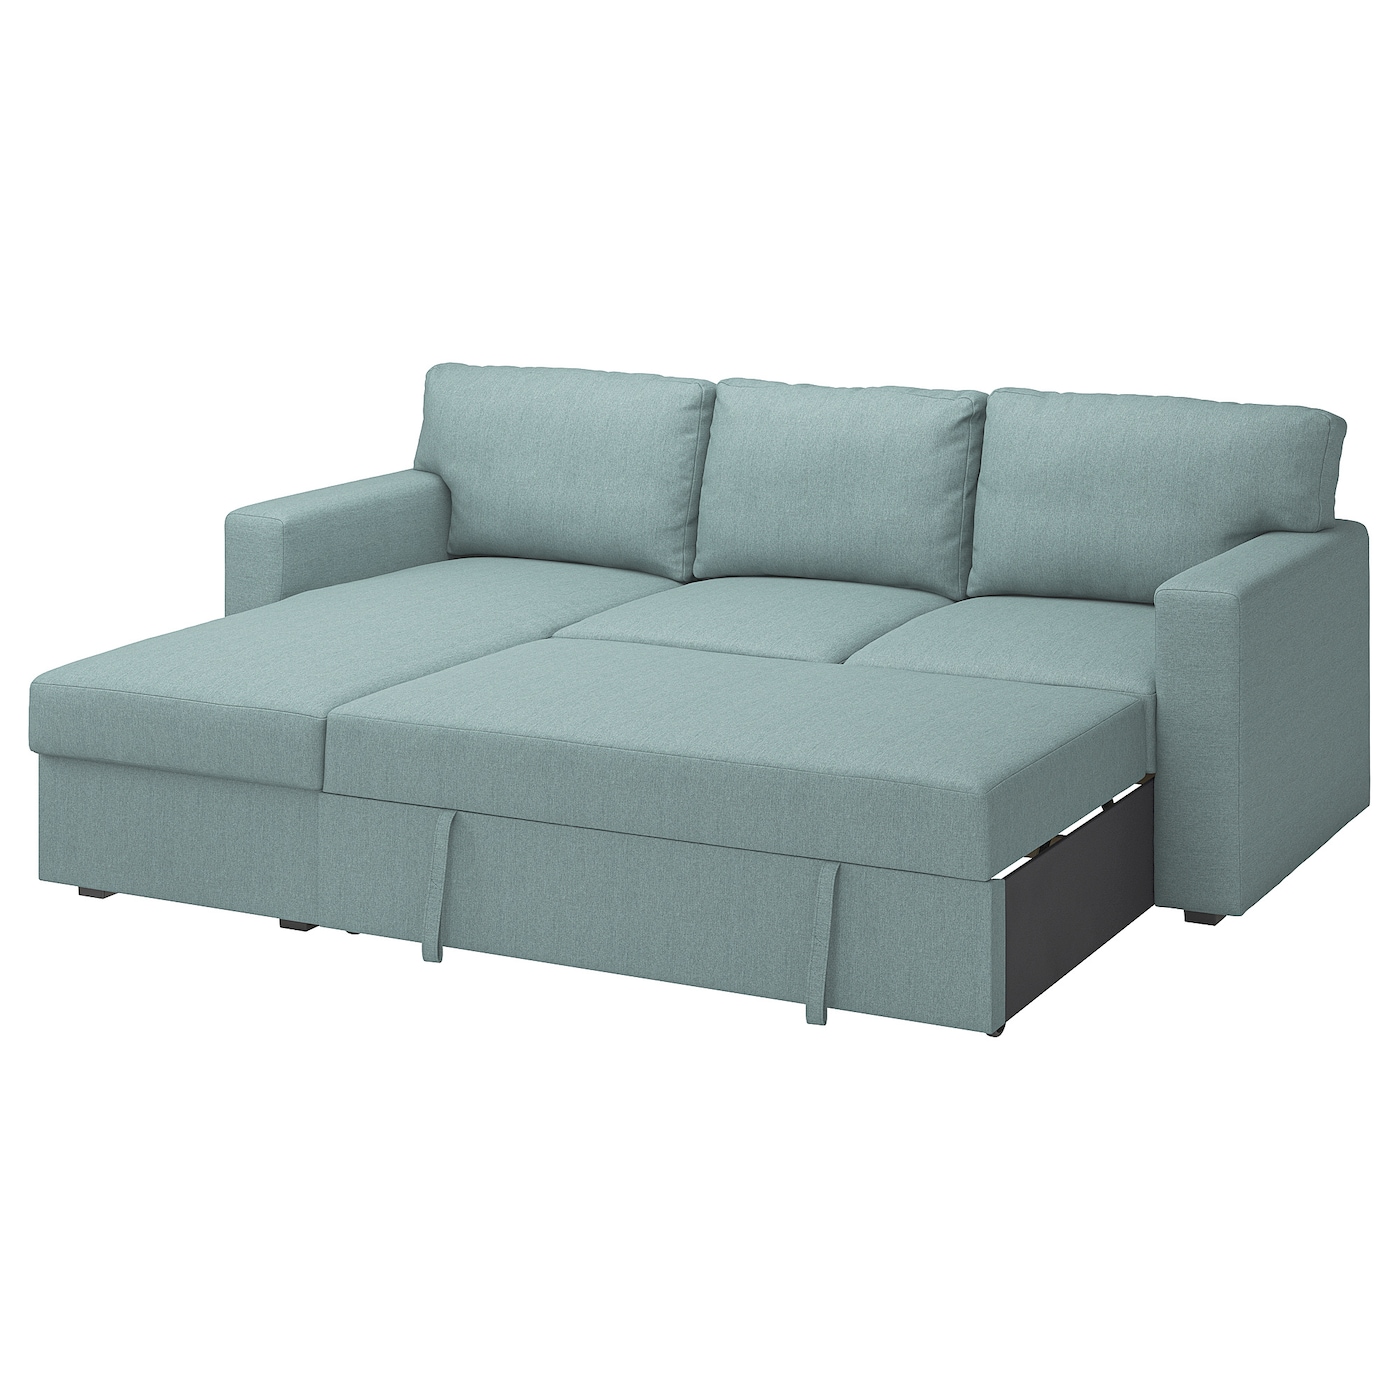 БОРСЛОВ 3-местный диван-кровать + диван, Тибблби светло-серый бирюзовый BÅRSLÖV IKEA кровать диван ру весмар 180 velvet terra